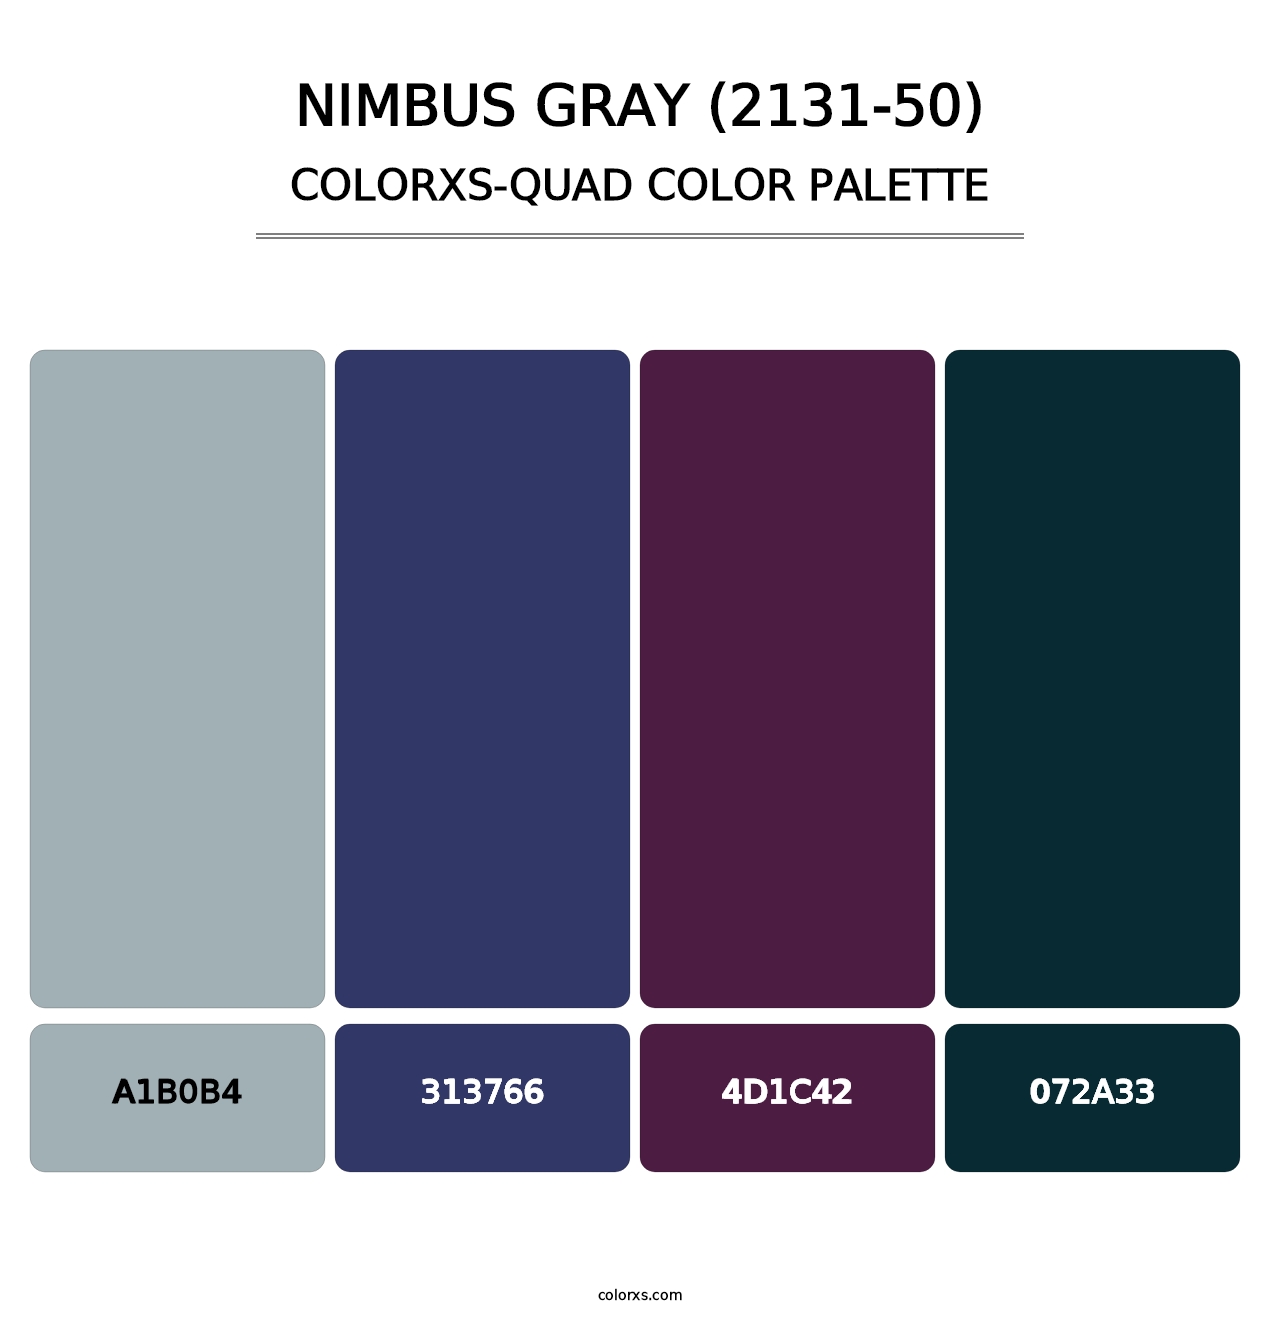 Nimbus Gray (2131-50) - Colorxs Quad Palette